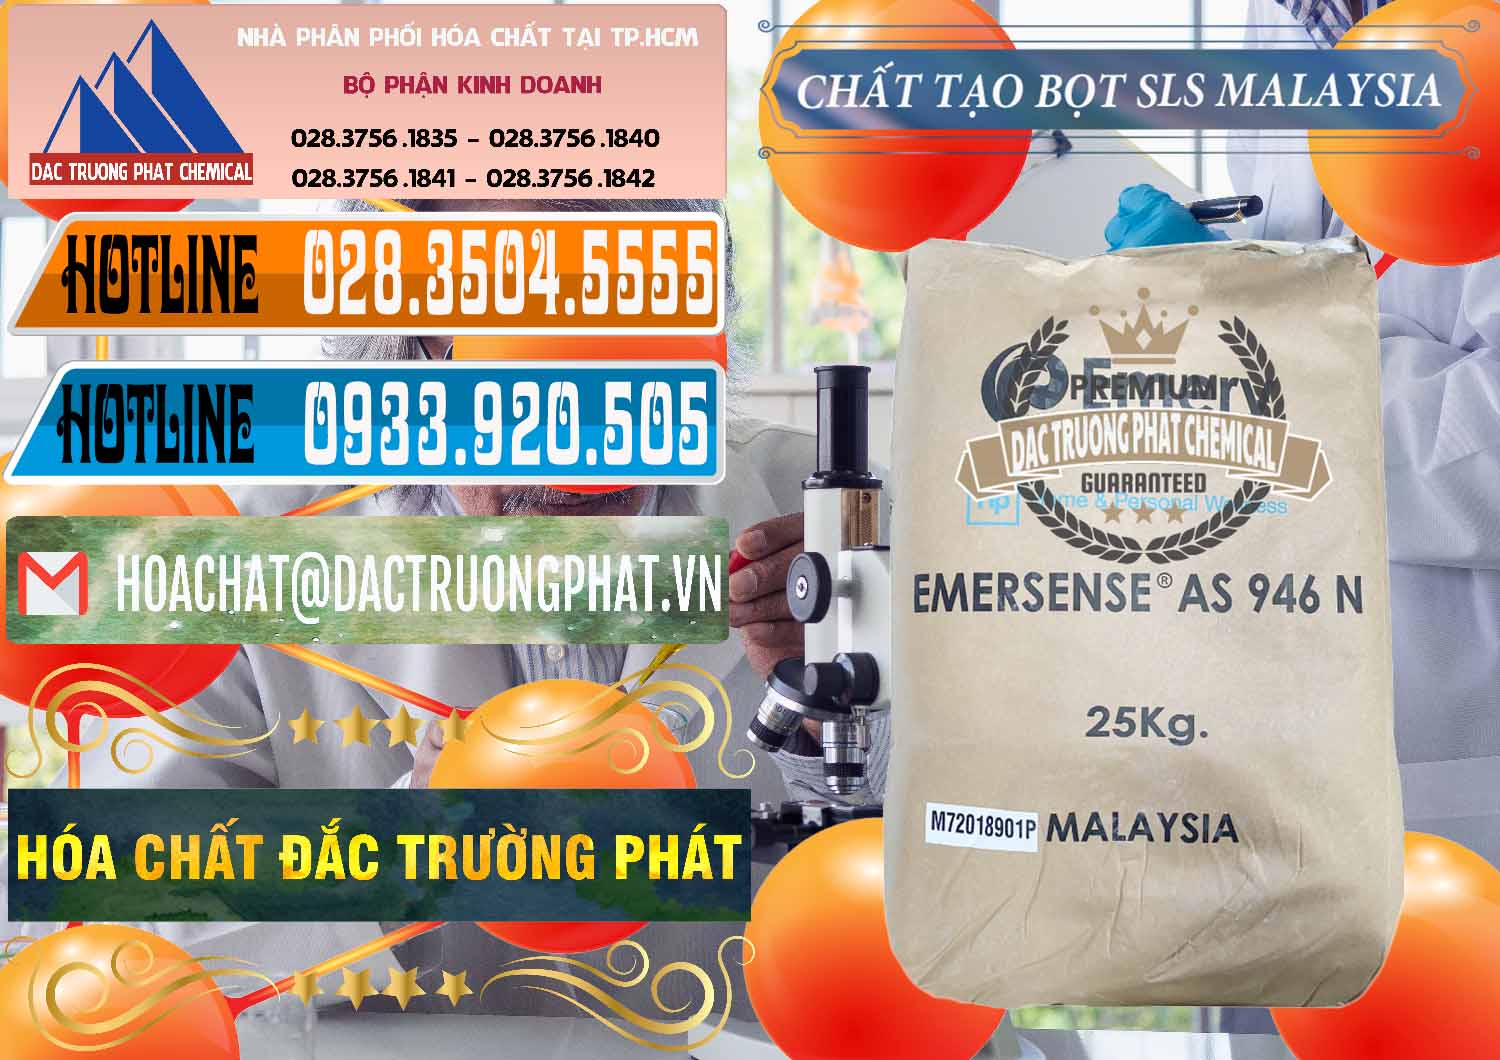 Chuyên bán & phân phối Chất Tạo Bọt SLS Emery - Emersense AS 946N Mã Lai Malaysia - 0423 - Cty cung cấp & phân phối hóa chất tại TP.HCM - stmp.net